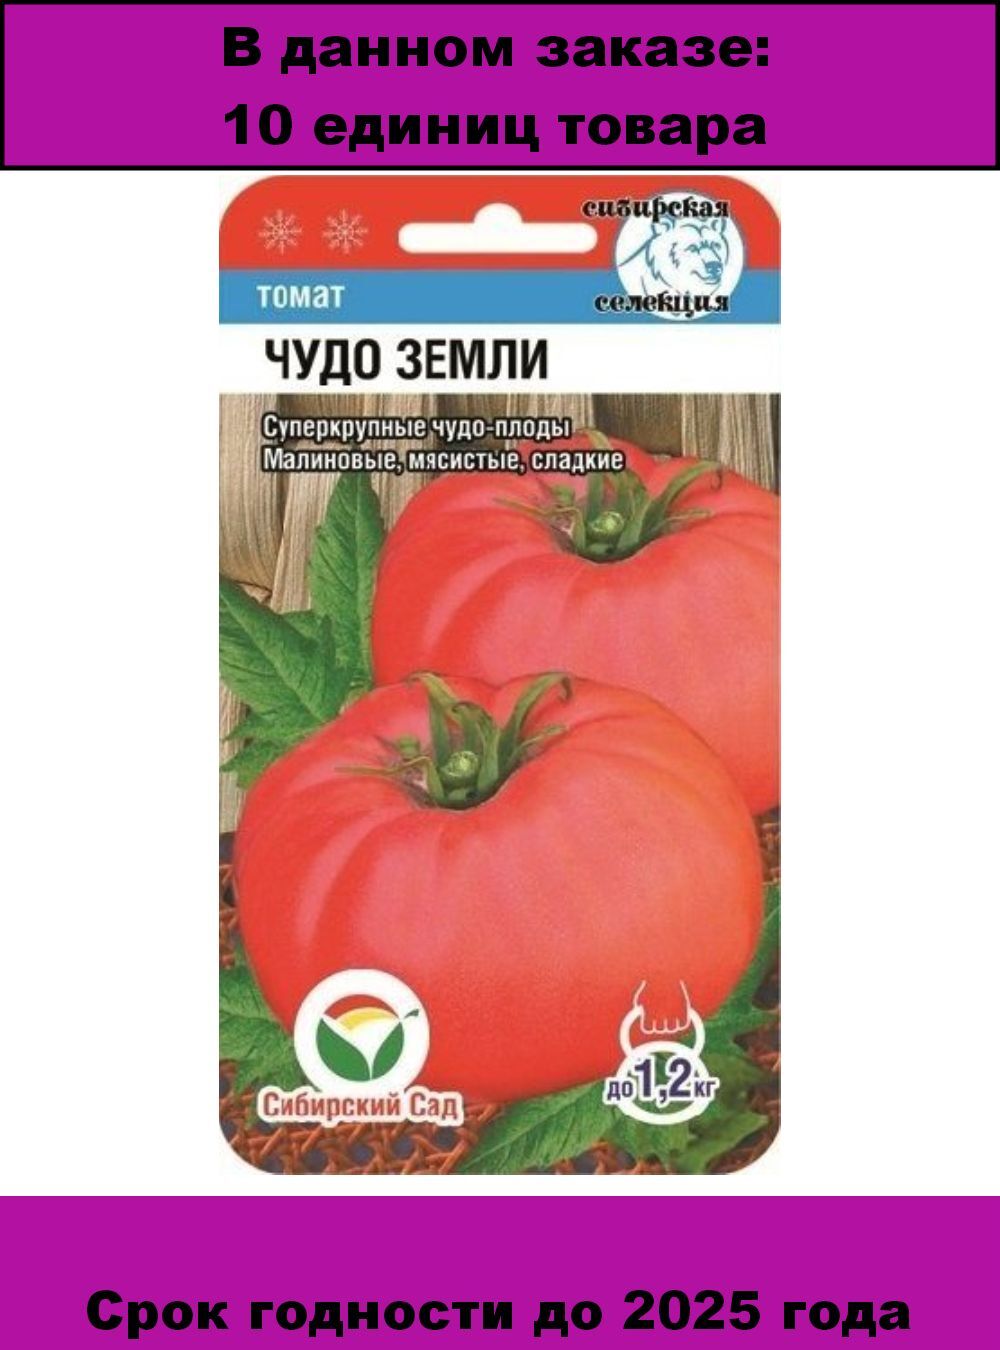 томат малиновое чудо отзывы фото урожайность